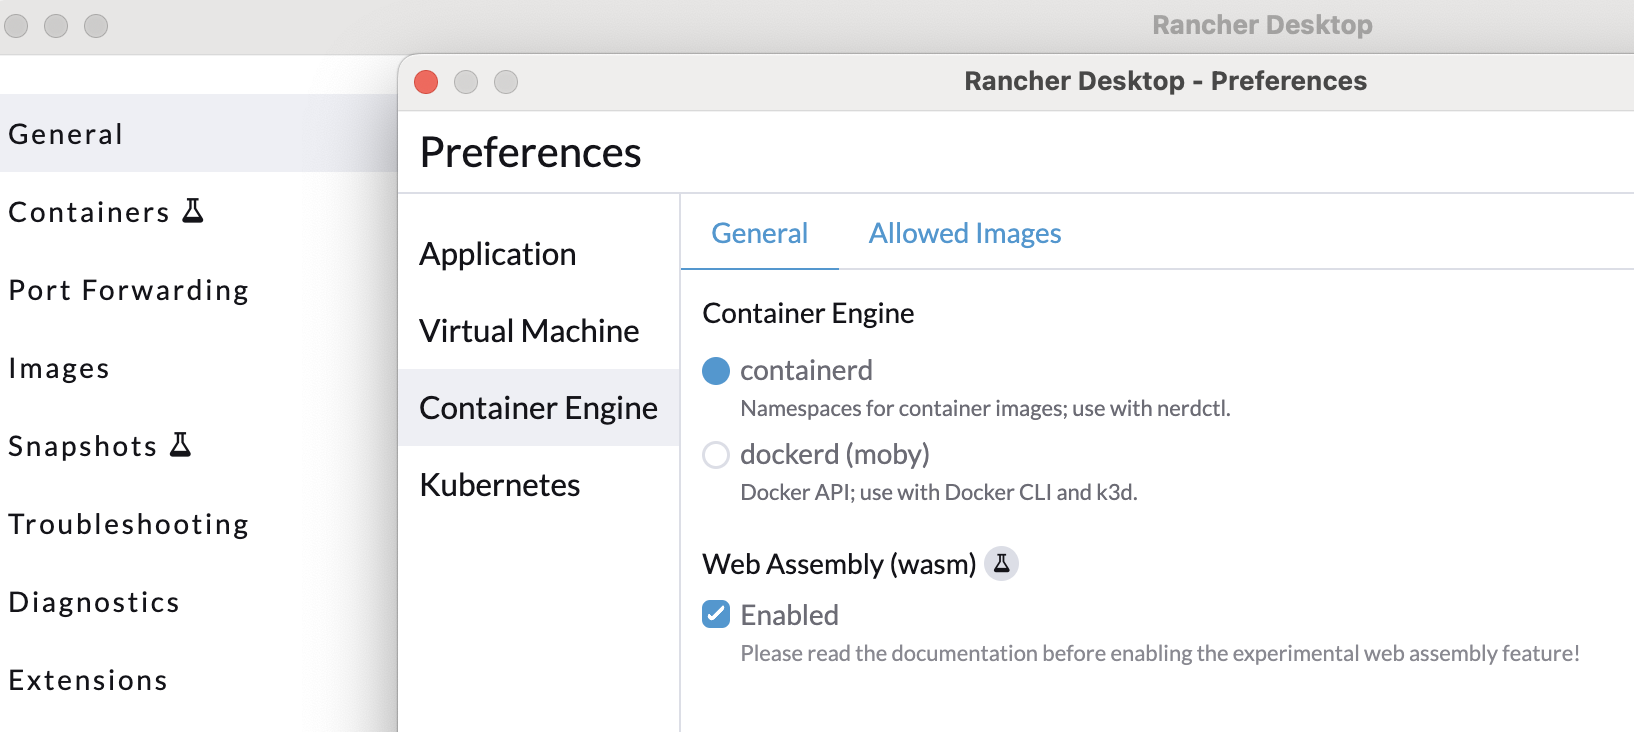 Rancher Desktop Preferences Wasm